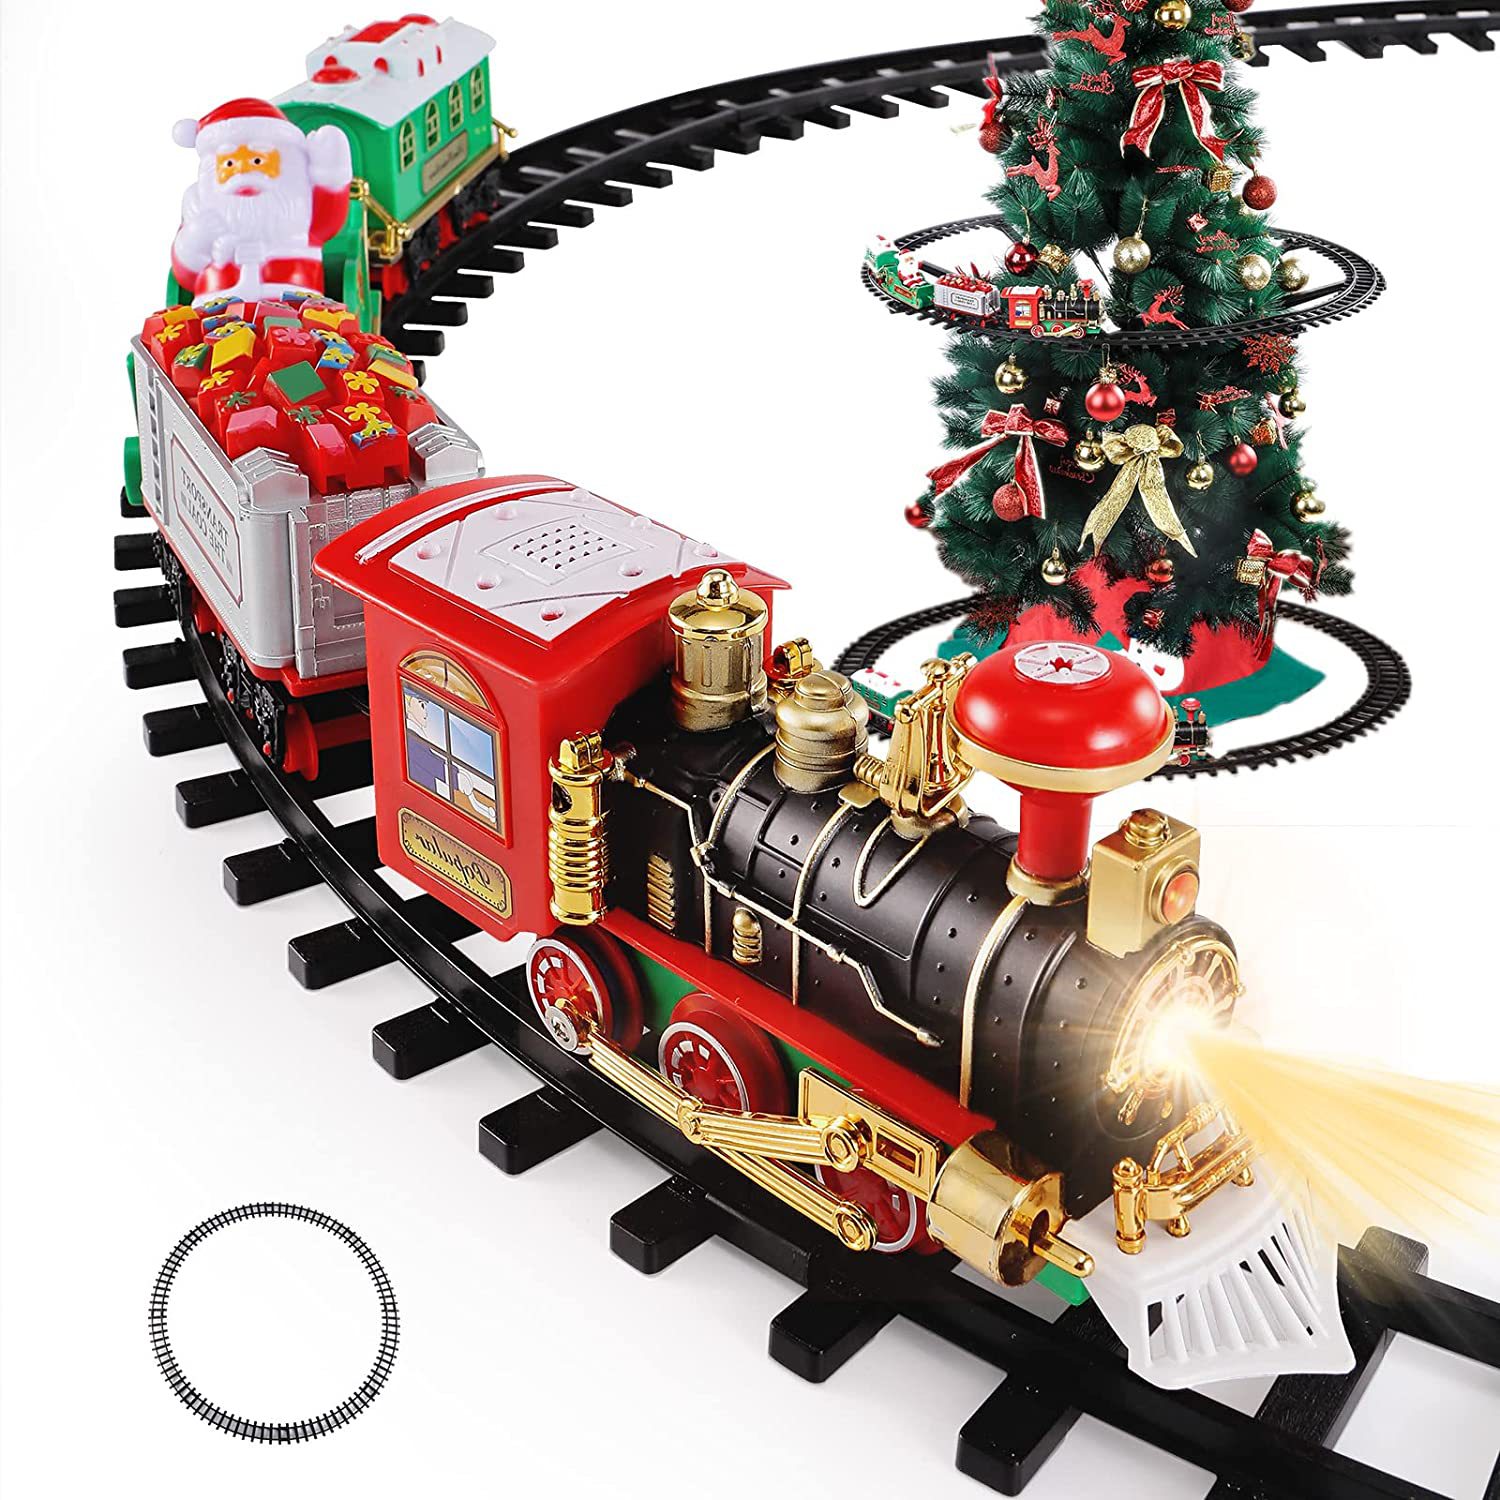 二合一可悬挂圣诞树轨道玩具火车带声效灯光 圣诞火车装饰玩具礼